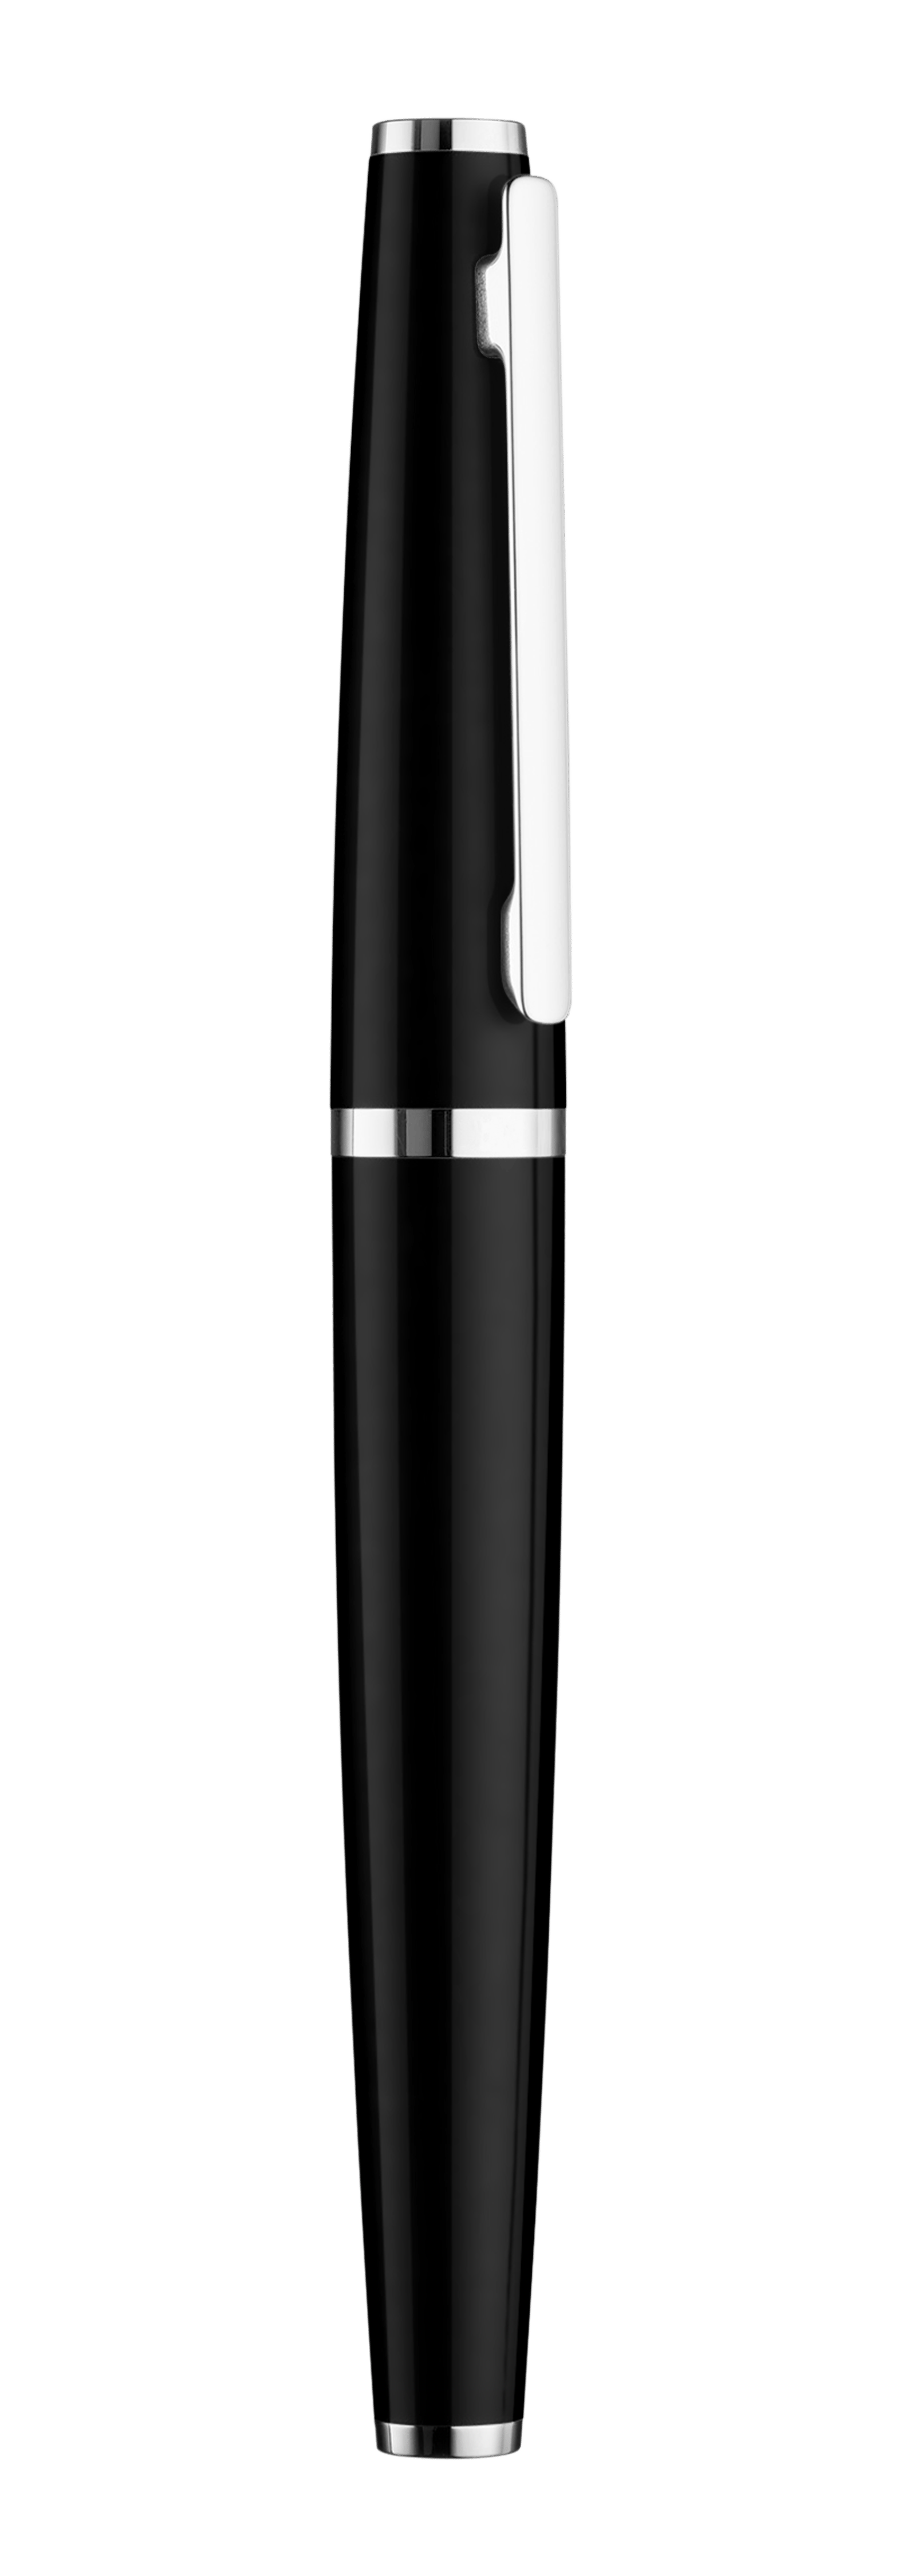 Tintenroller schwarz glanz/platiniert - Design 06